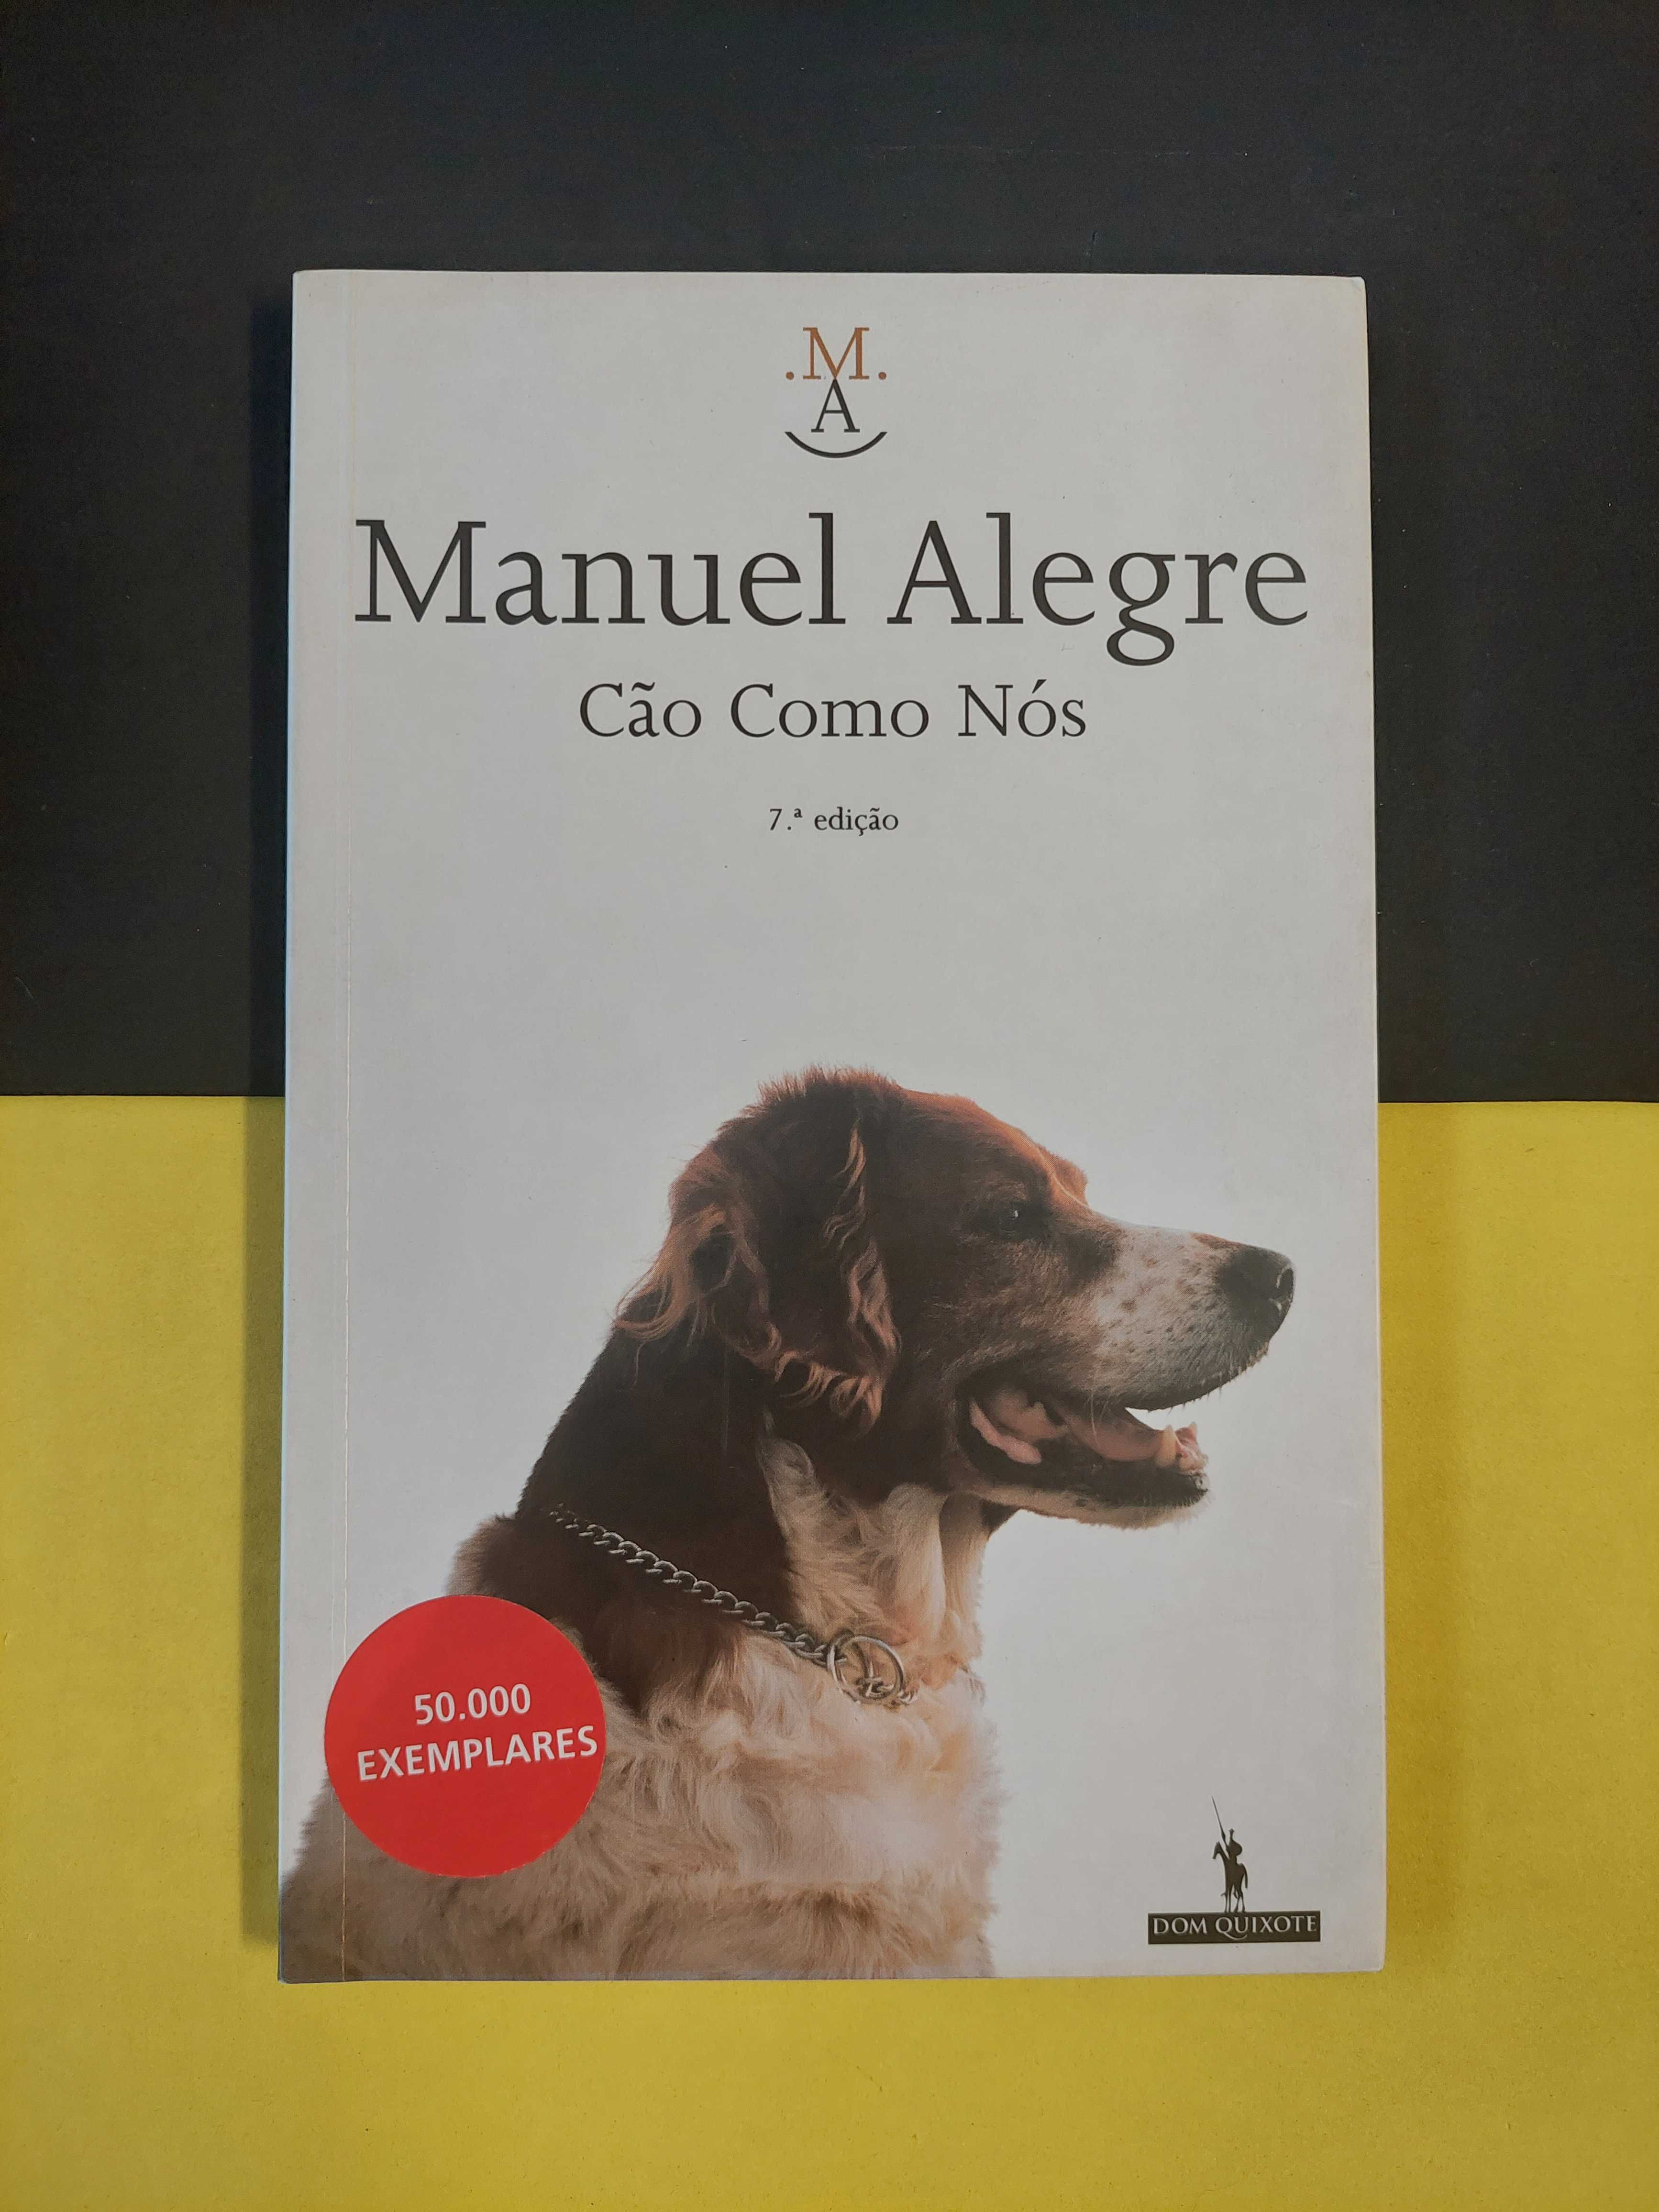 Manuel Alegre - Cão como nós, 7ª edição